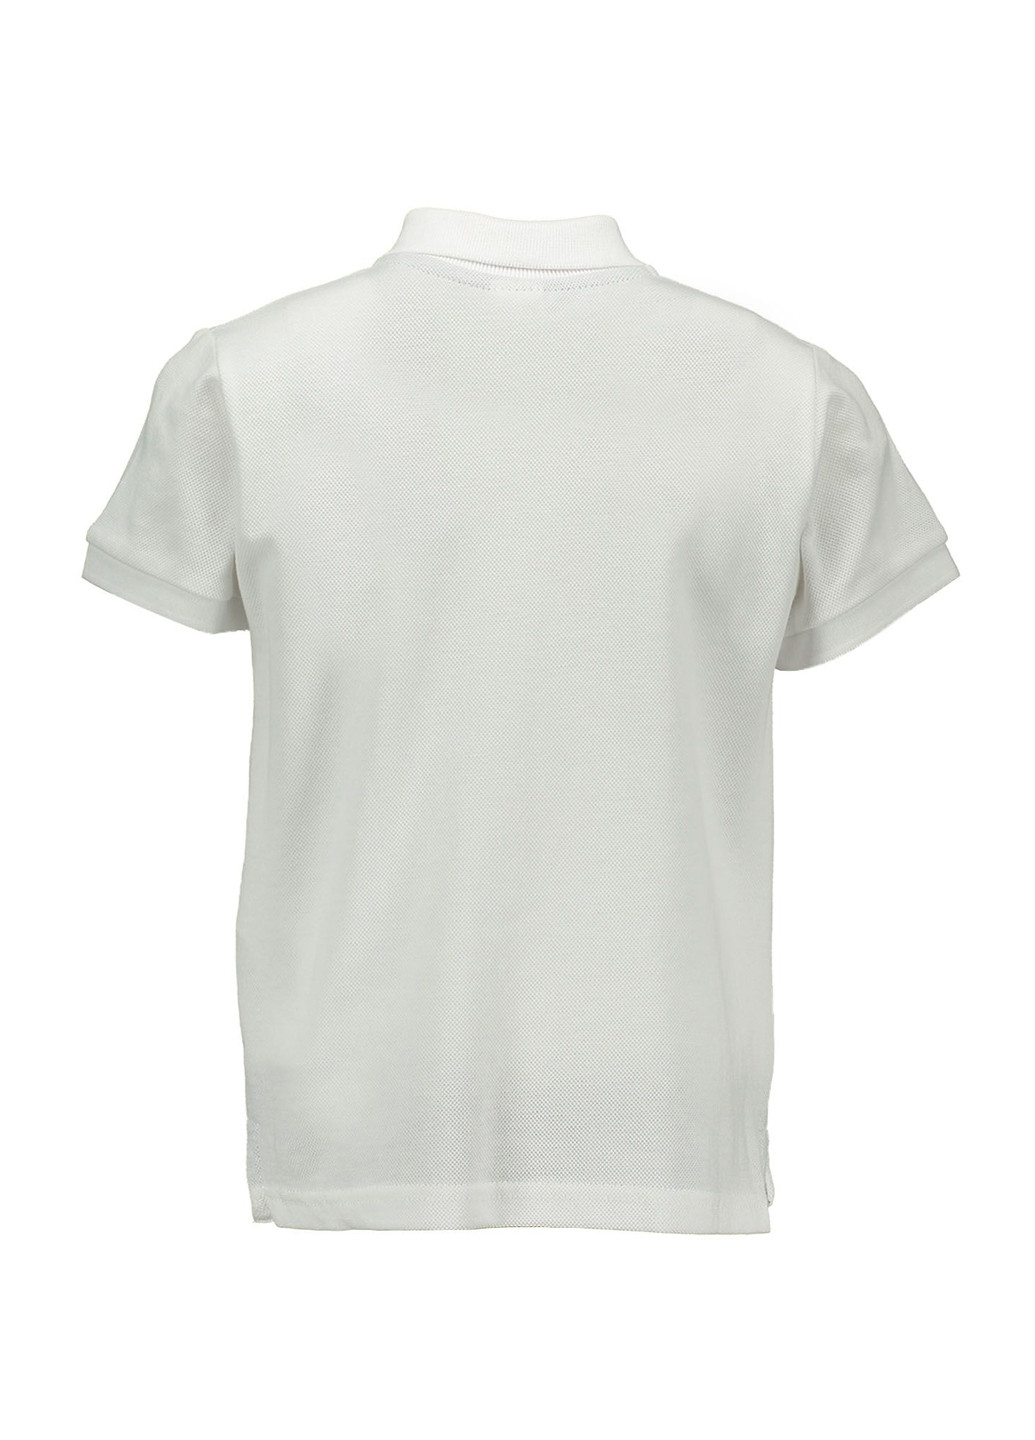 Белая детская футболка-поло для мальчика Piazza Italia